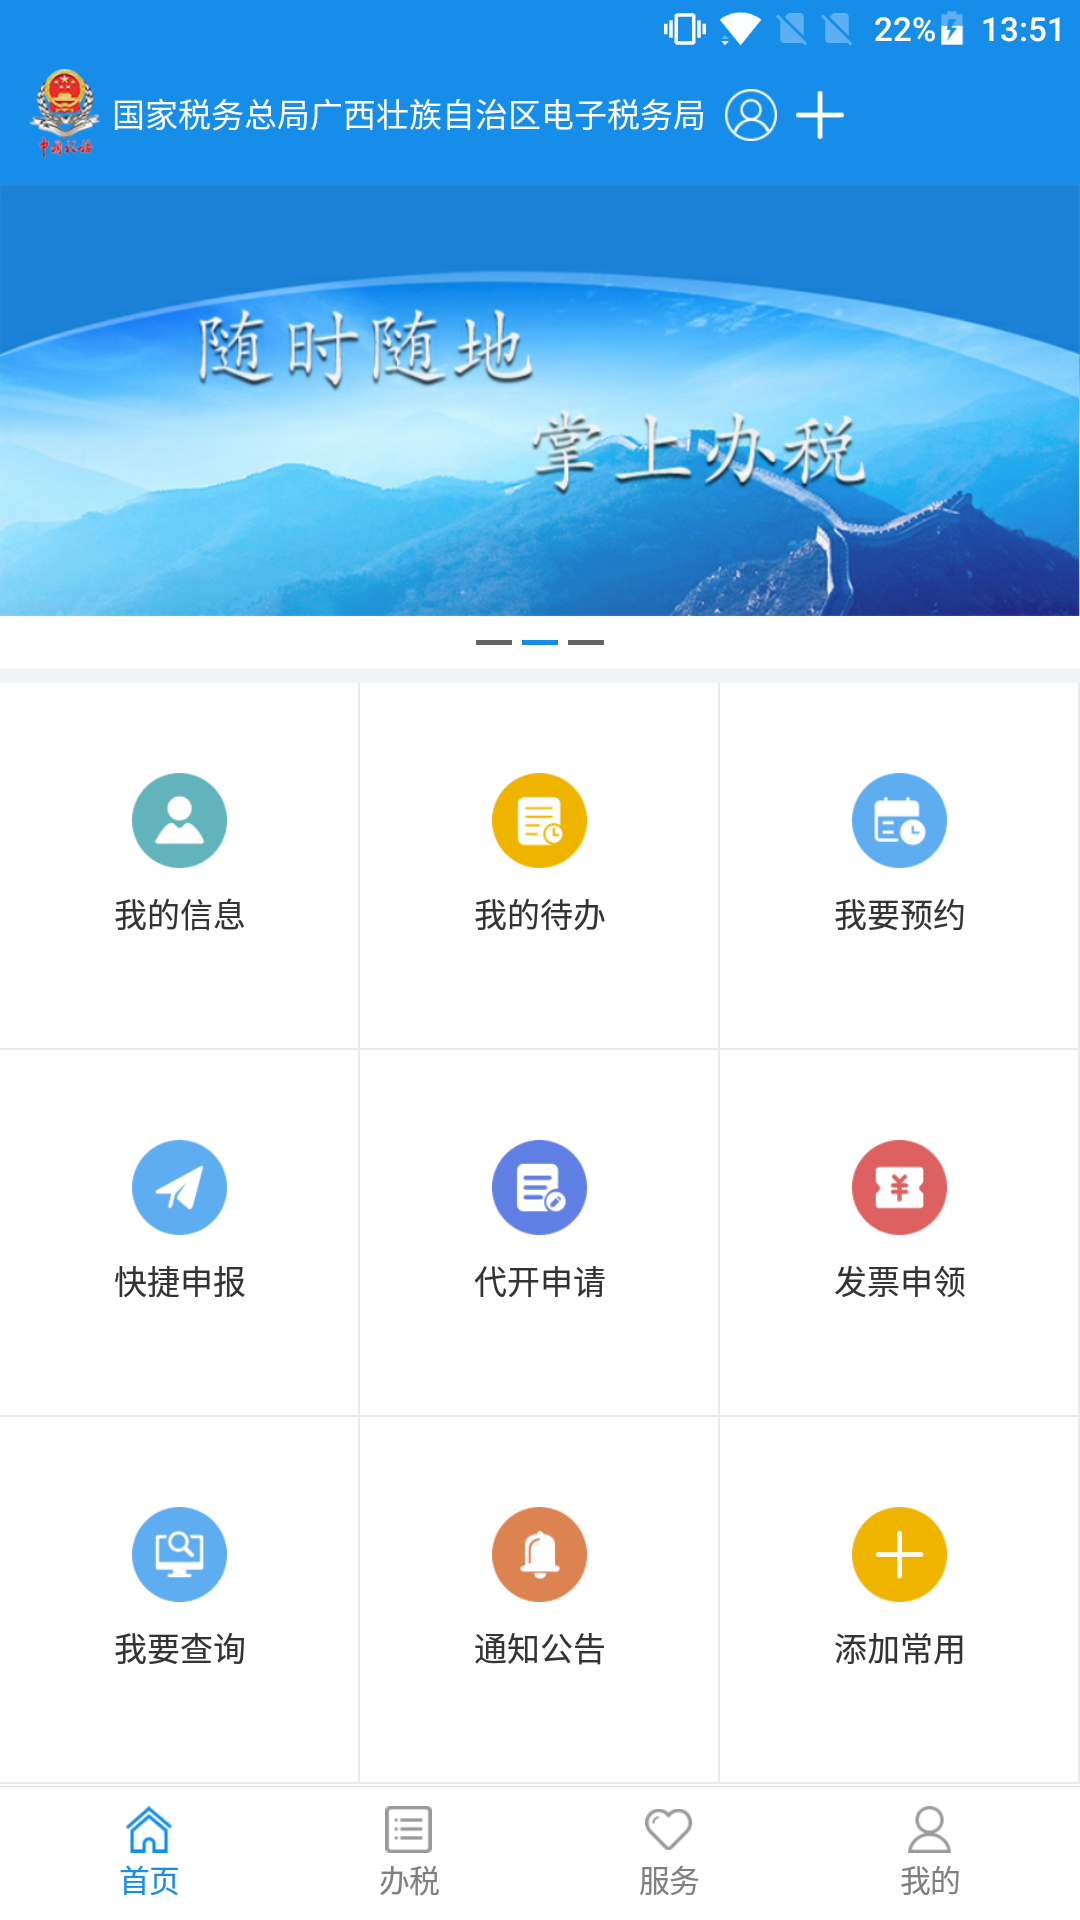 广西税务appv1.3.5